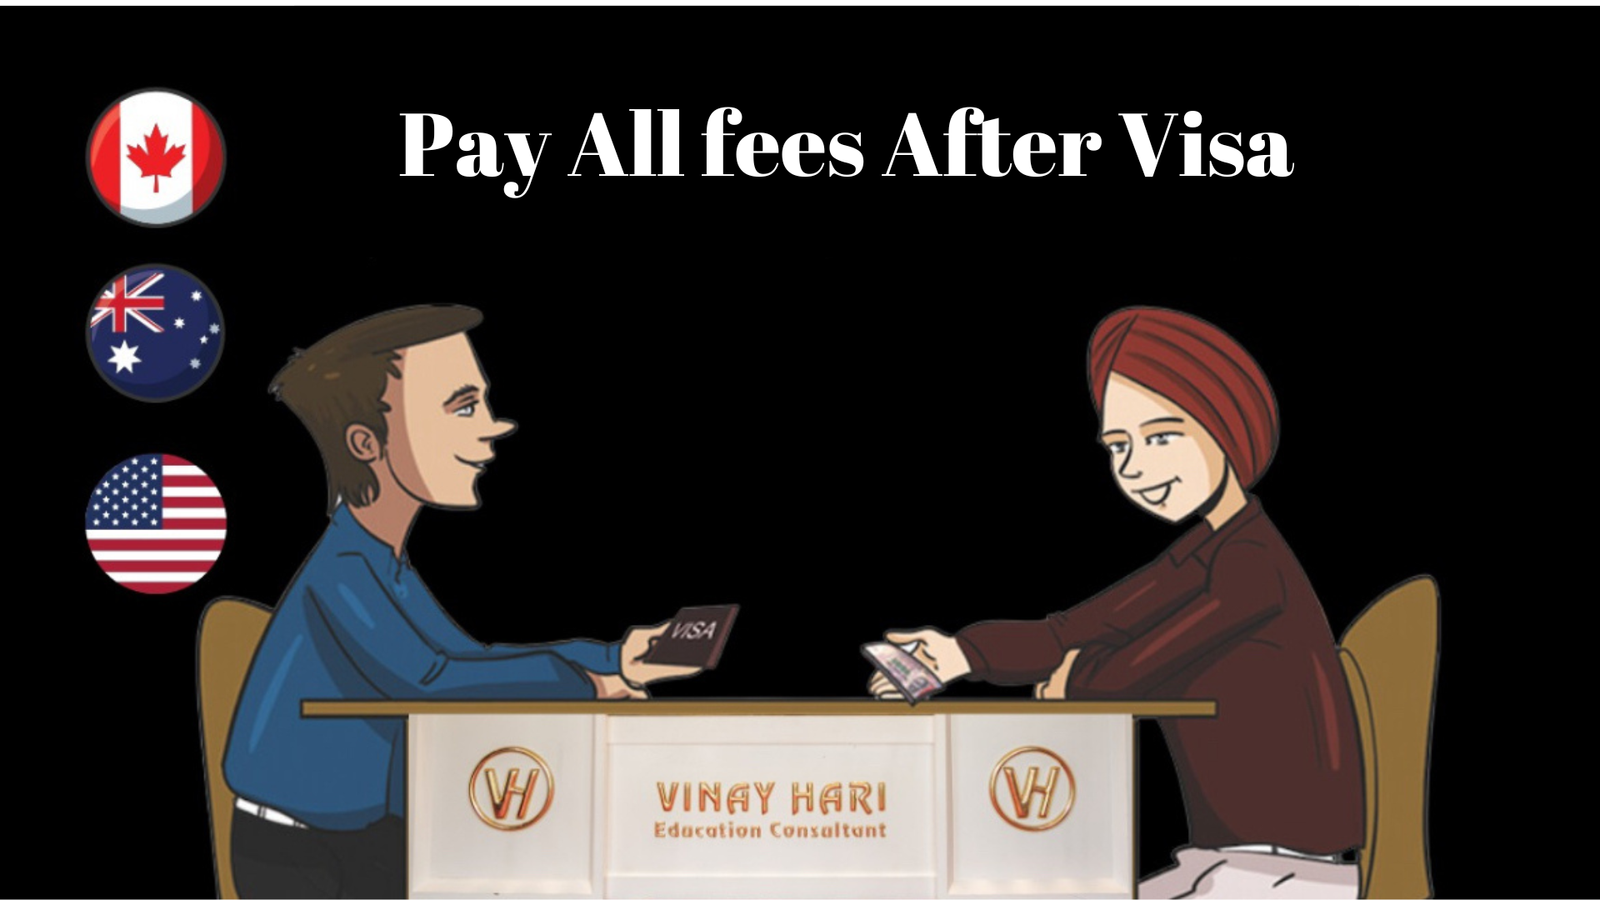 Fee After Visa